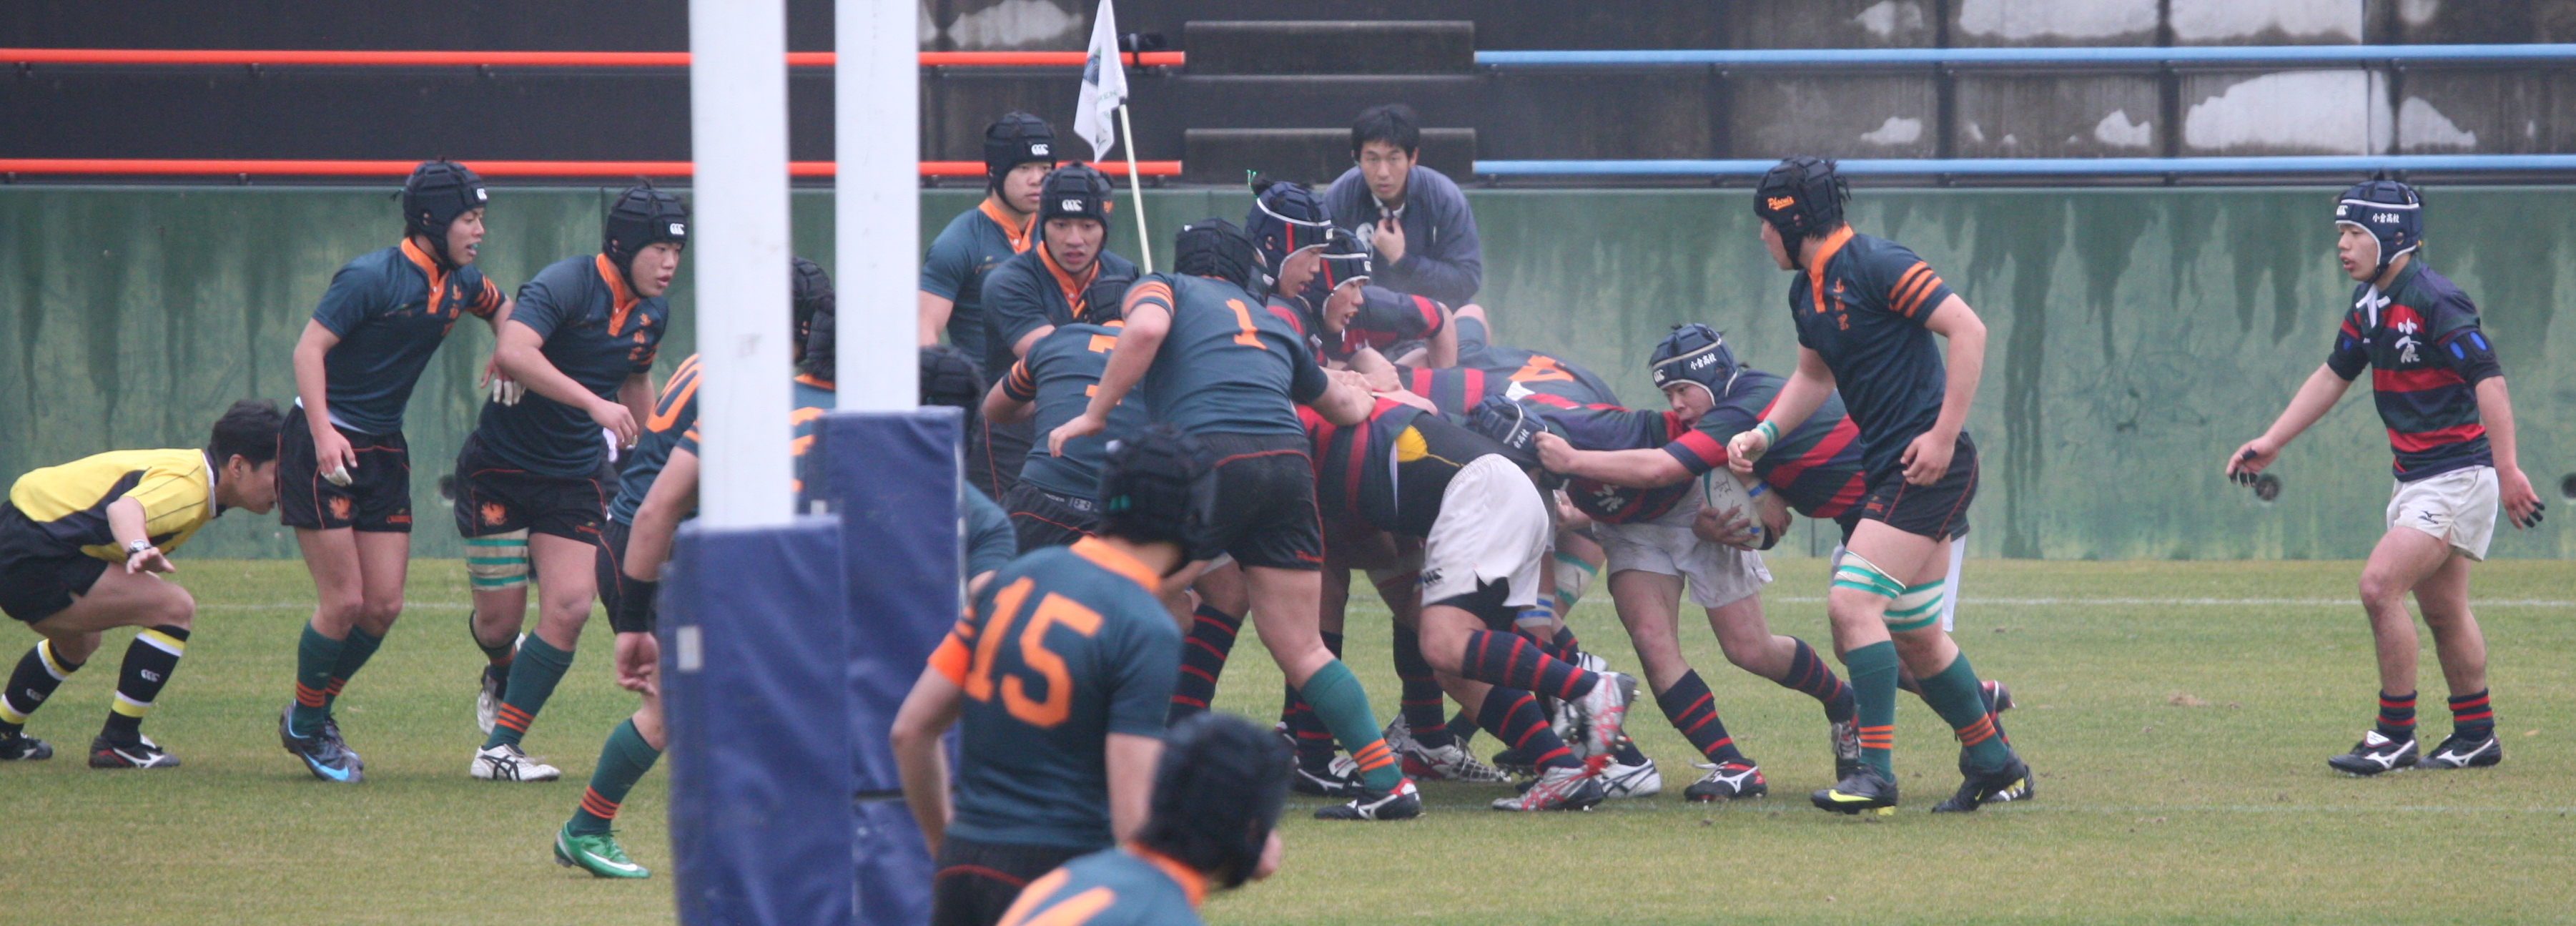 http://kokura-rugby.sakura.ne.jp/2010.1.31-A.JPG